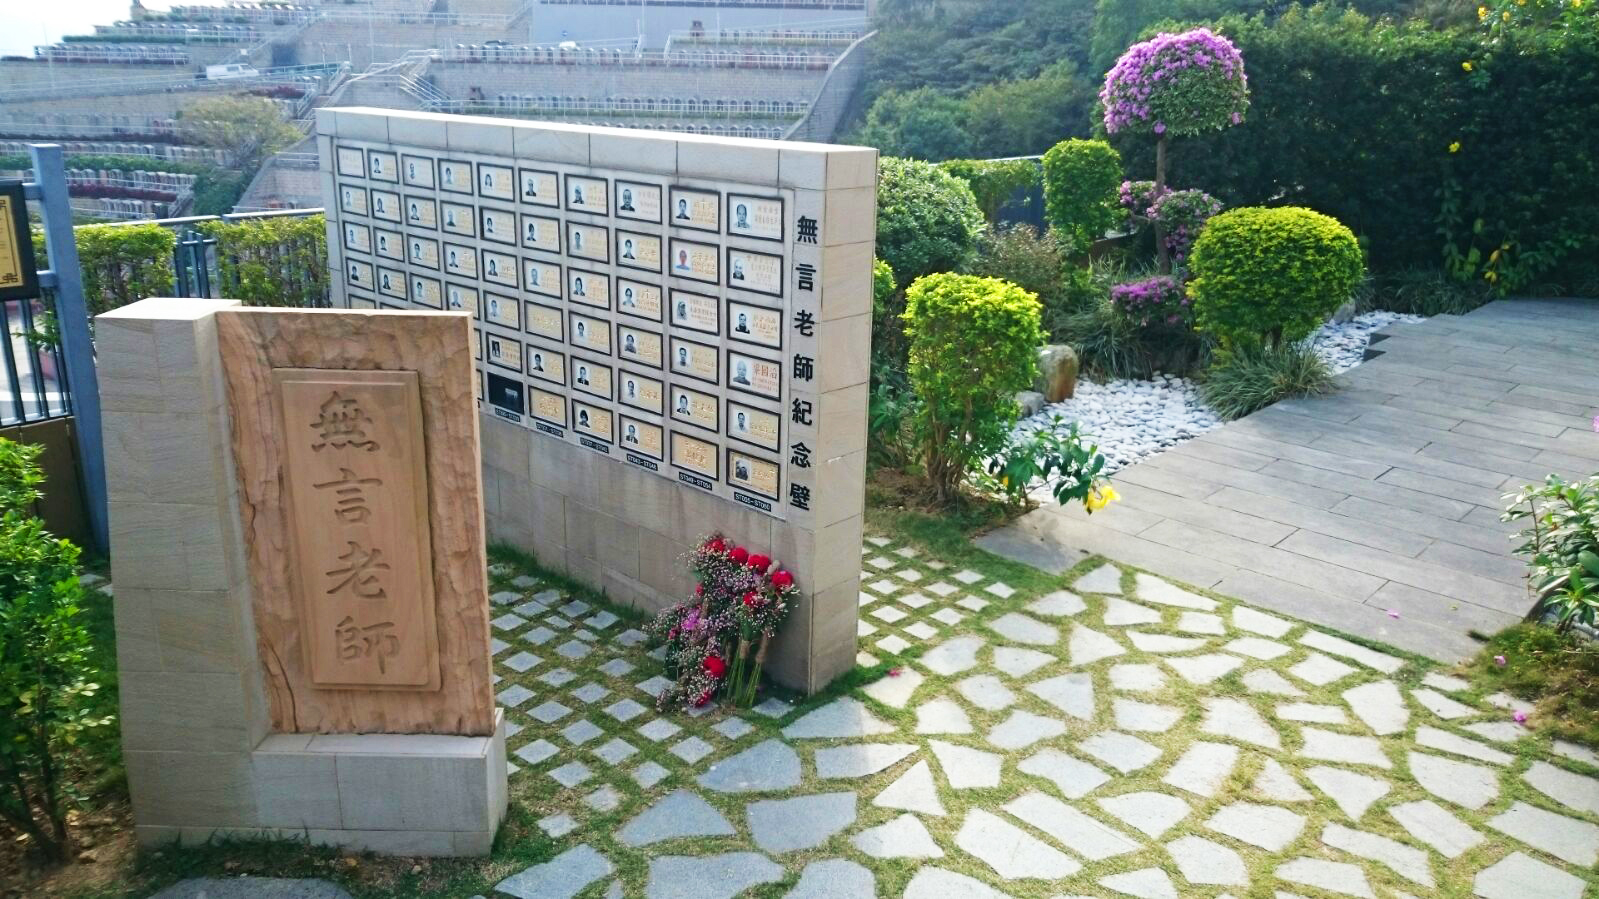 将军澳纪念花园设立遗体捐赠者专用纪念墙，表掦「无言老师」贡献医学研究的无私精神。